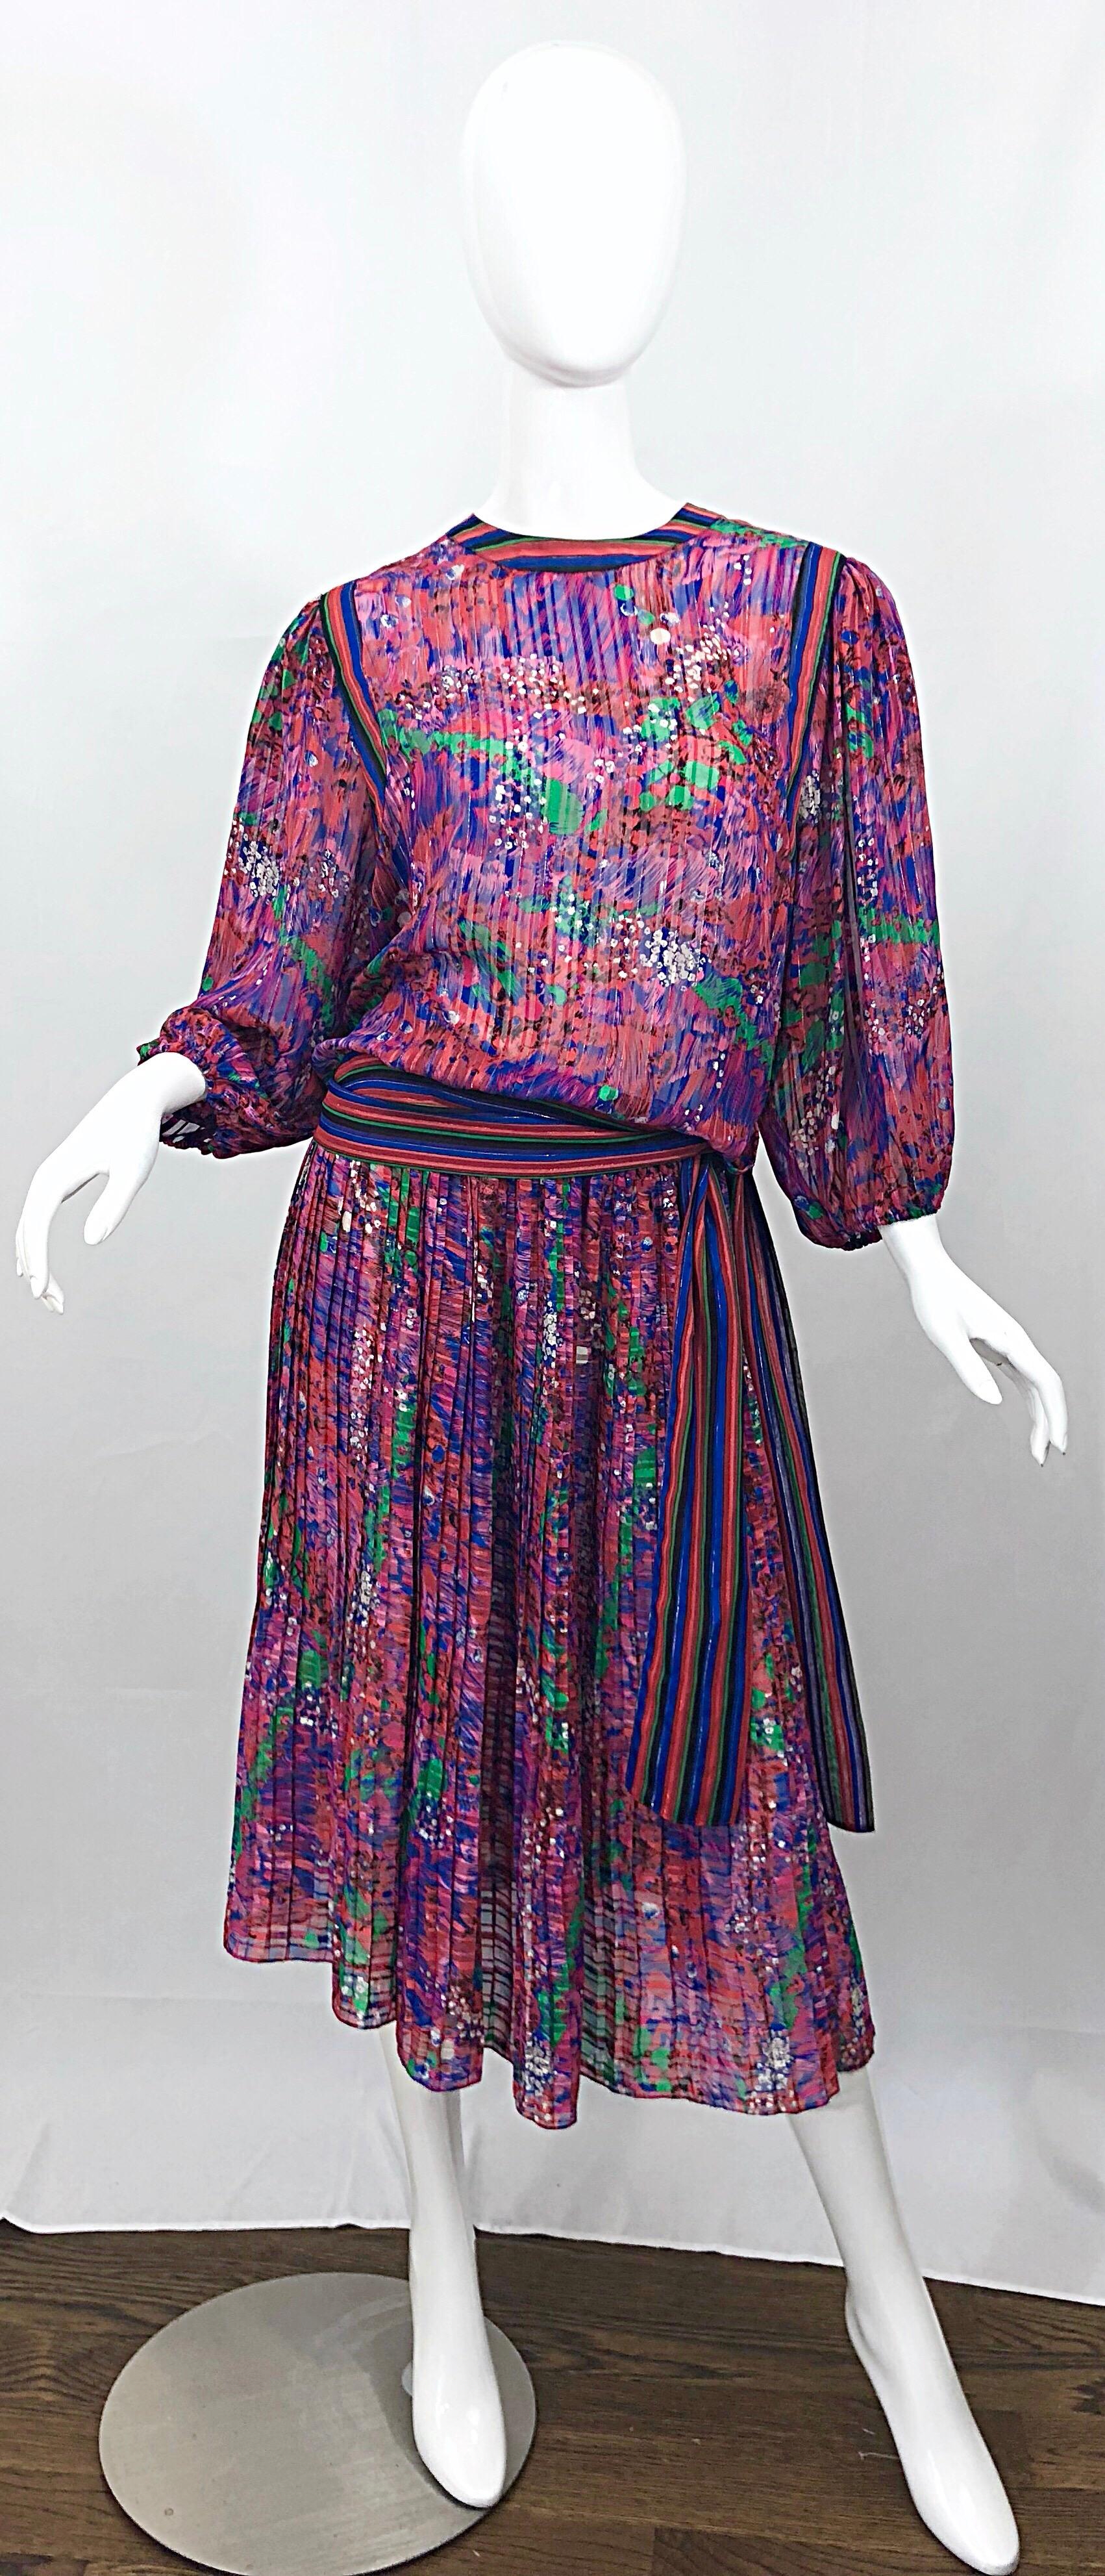 Fabelhafte 80er Jahre DIANE FREIS Blumen und Streifen zwei Stück Boho Kleid Ensemble! Mit leuchtenden Farben in Rosa, Lila, Grün und Blau und durchgängig metallischen Fäden. Der typische Diane Fres-Stil ist leicht und luftig. Die Bluse hat zwei